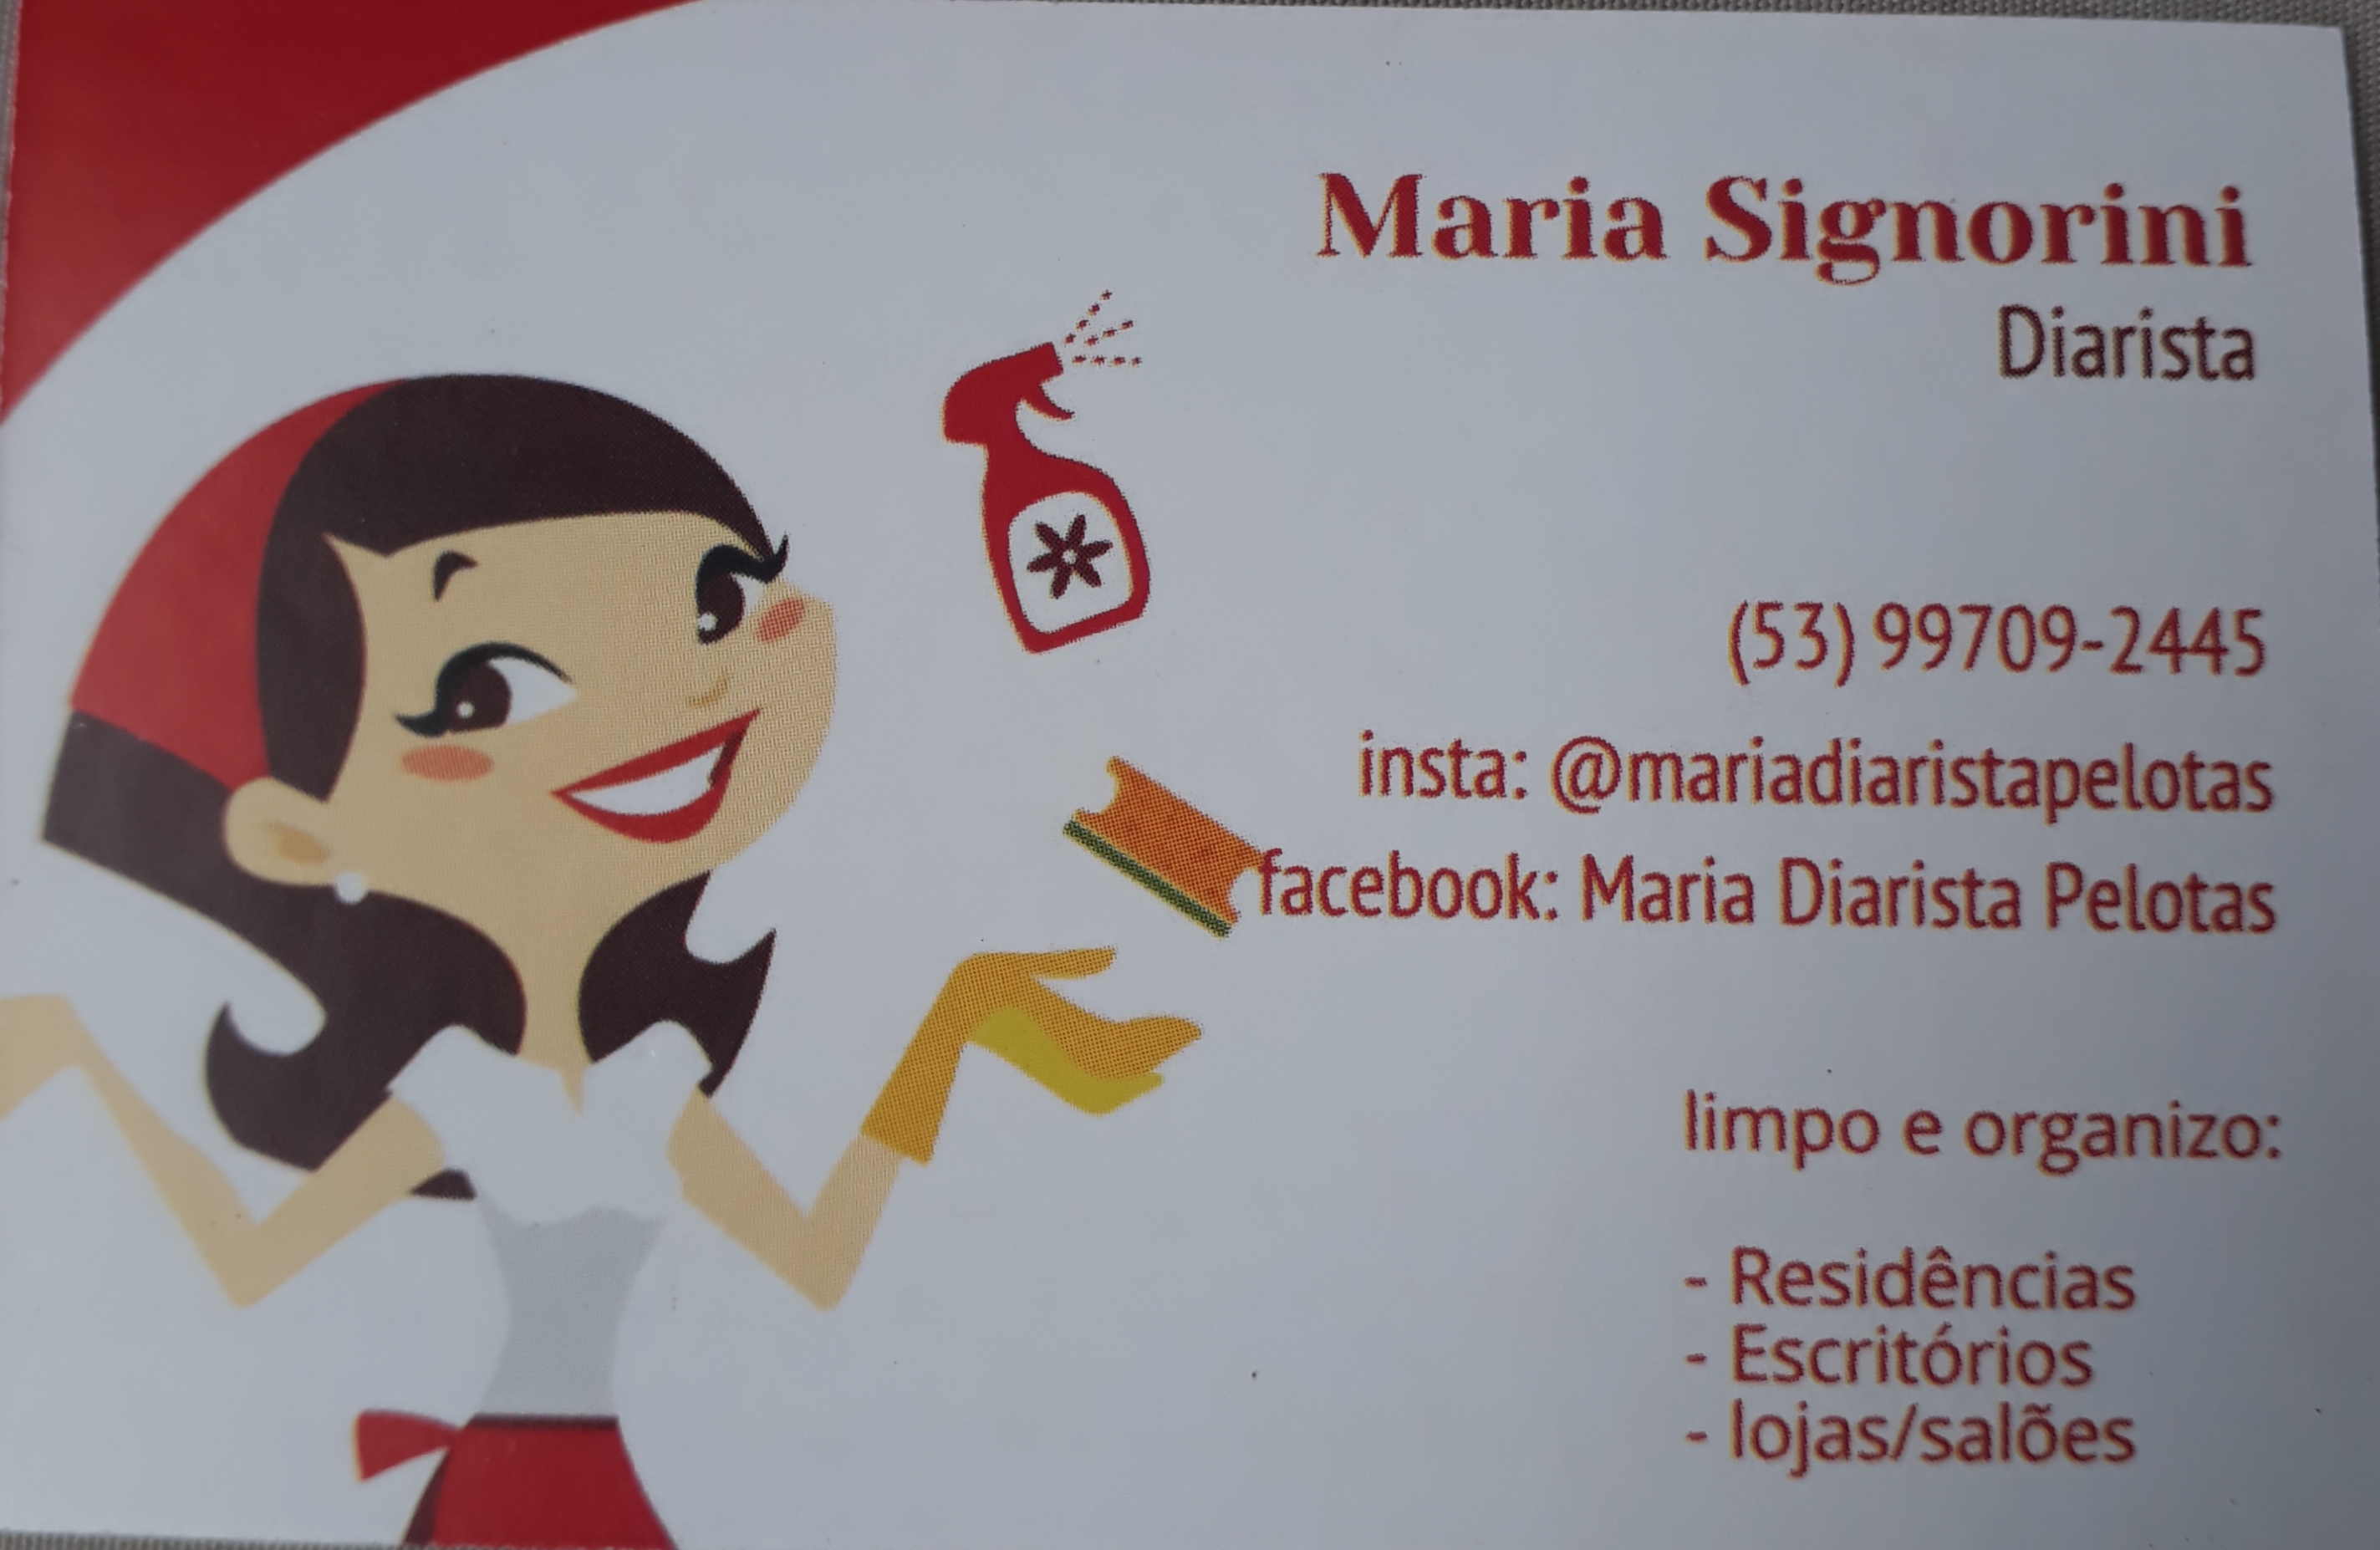 Maria Signorini
Diarista

(53) 99709-2445
insta: @mariadiaristapelotas
“facebook: Maria Diarista Pelotas

  
 

limpo e organizo:

- Residéncias
- Escritorios
-lojas/saldes